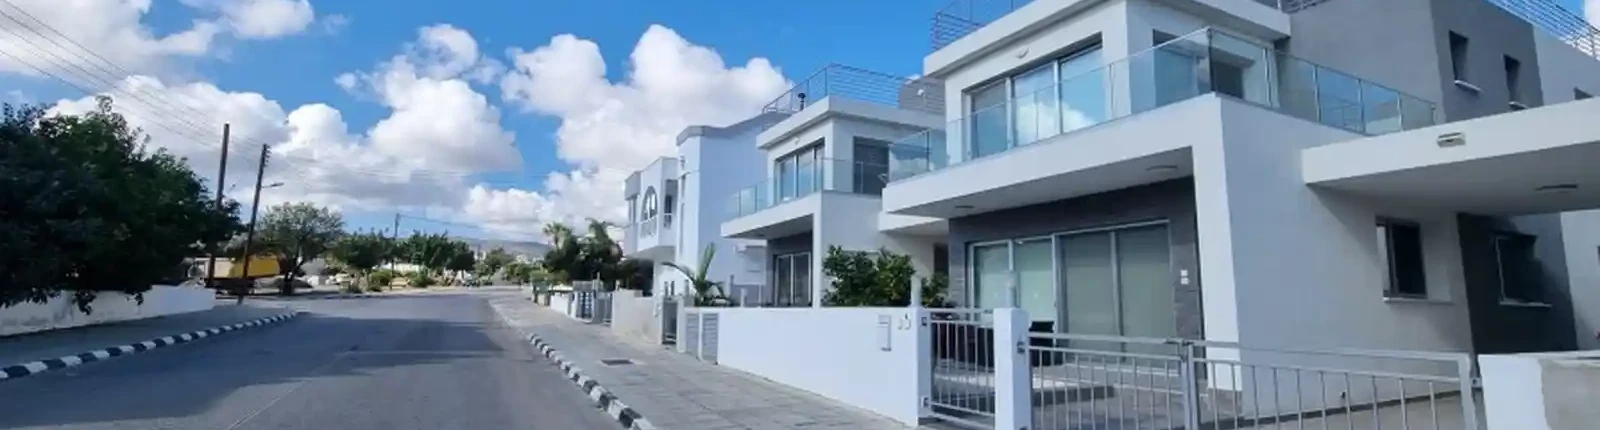 4-bedroom villa to rent €1.500, image 1